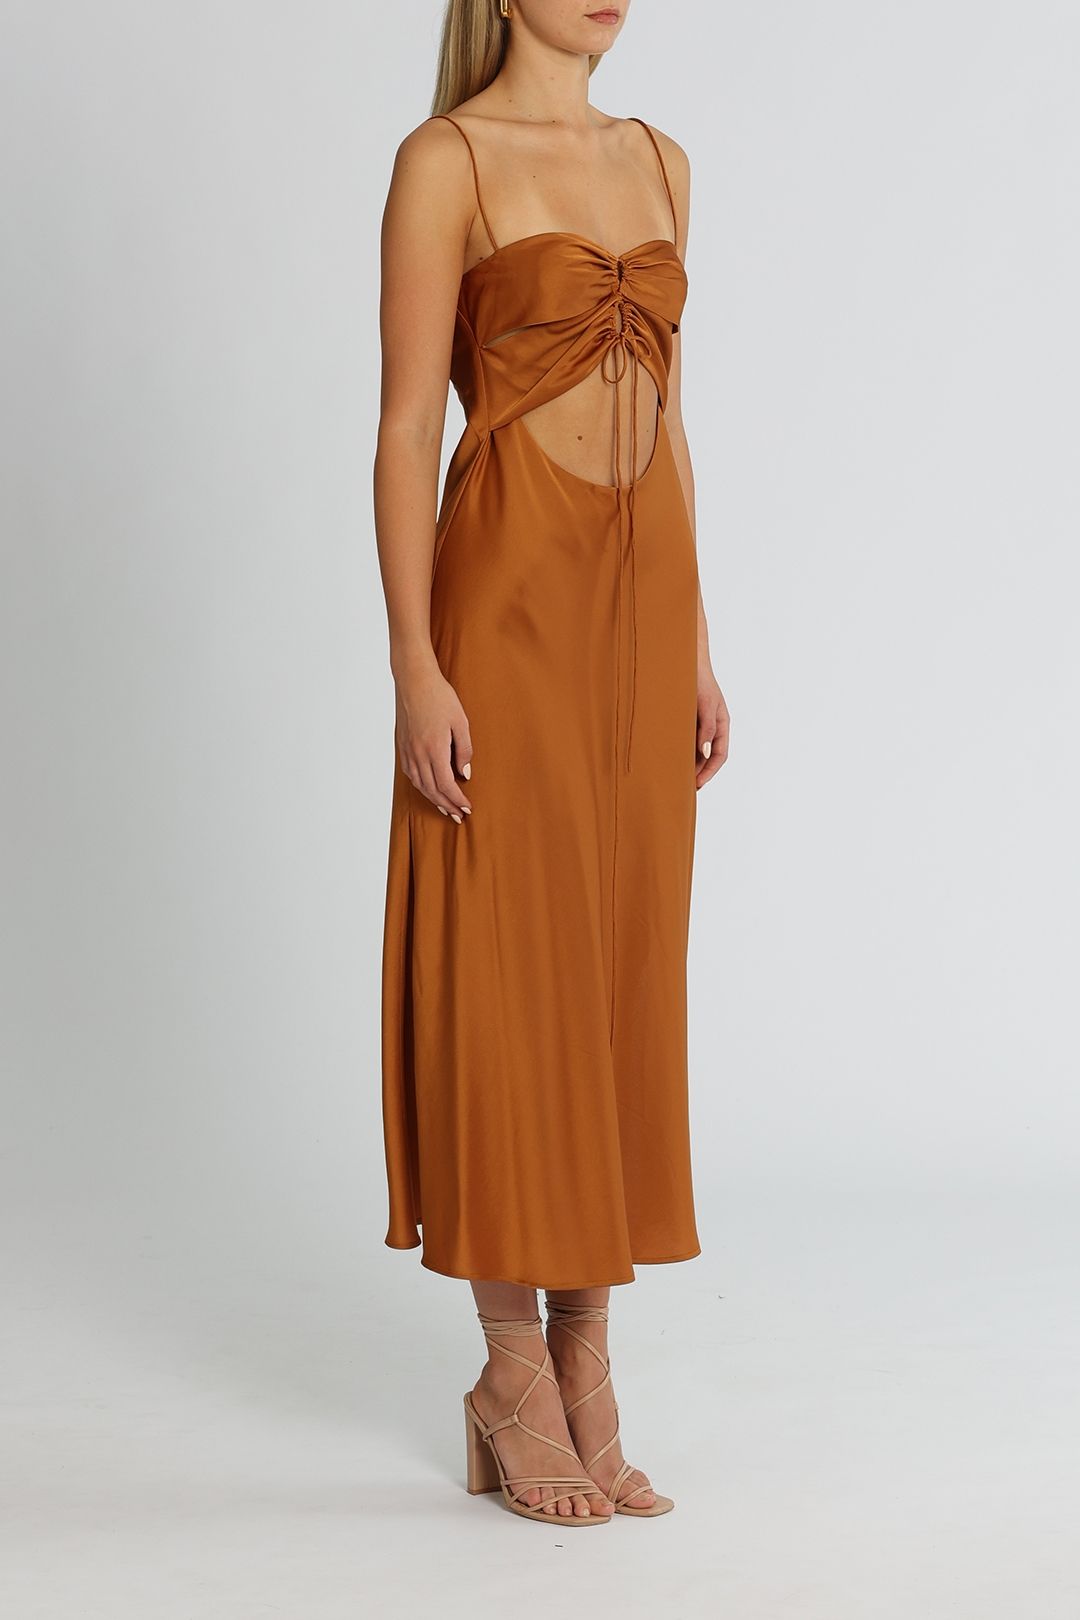 Clea Estelle Slip Dress Copper Cutout